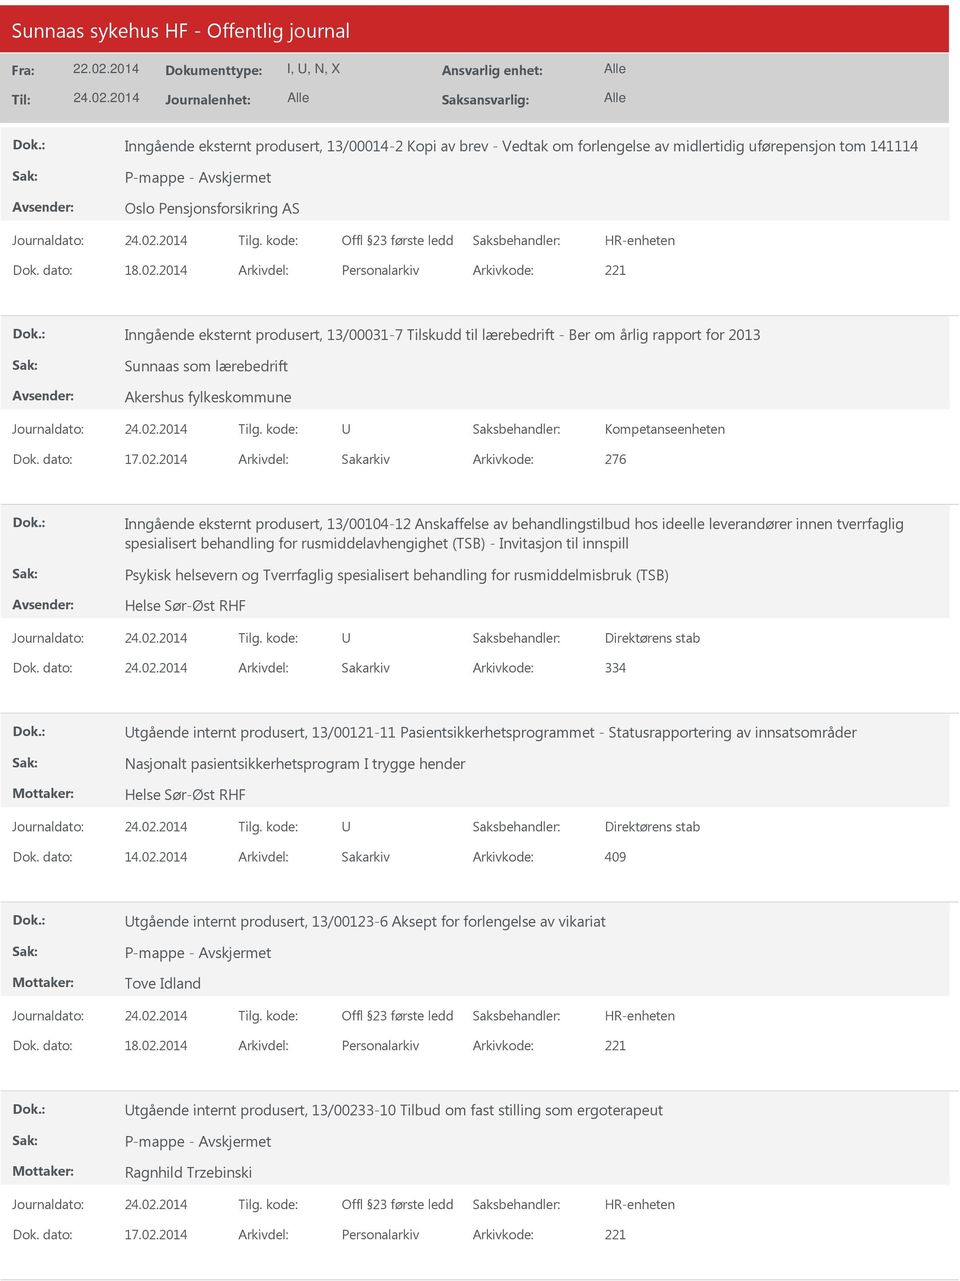 2014 Arkivdel: Sakarkiv Arkivkode: 276 Inngående eksternt produsert, 13/00104-12 Anskaffelse av behandlingstilbud hos ideelle leverandører innen tverrfaglig spesialisert behandling for